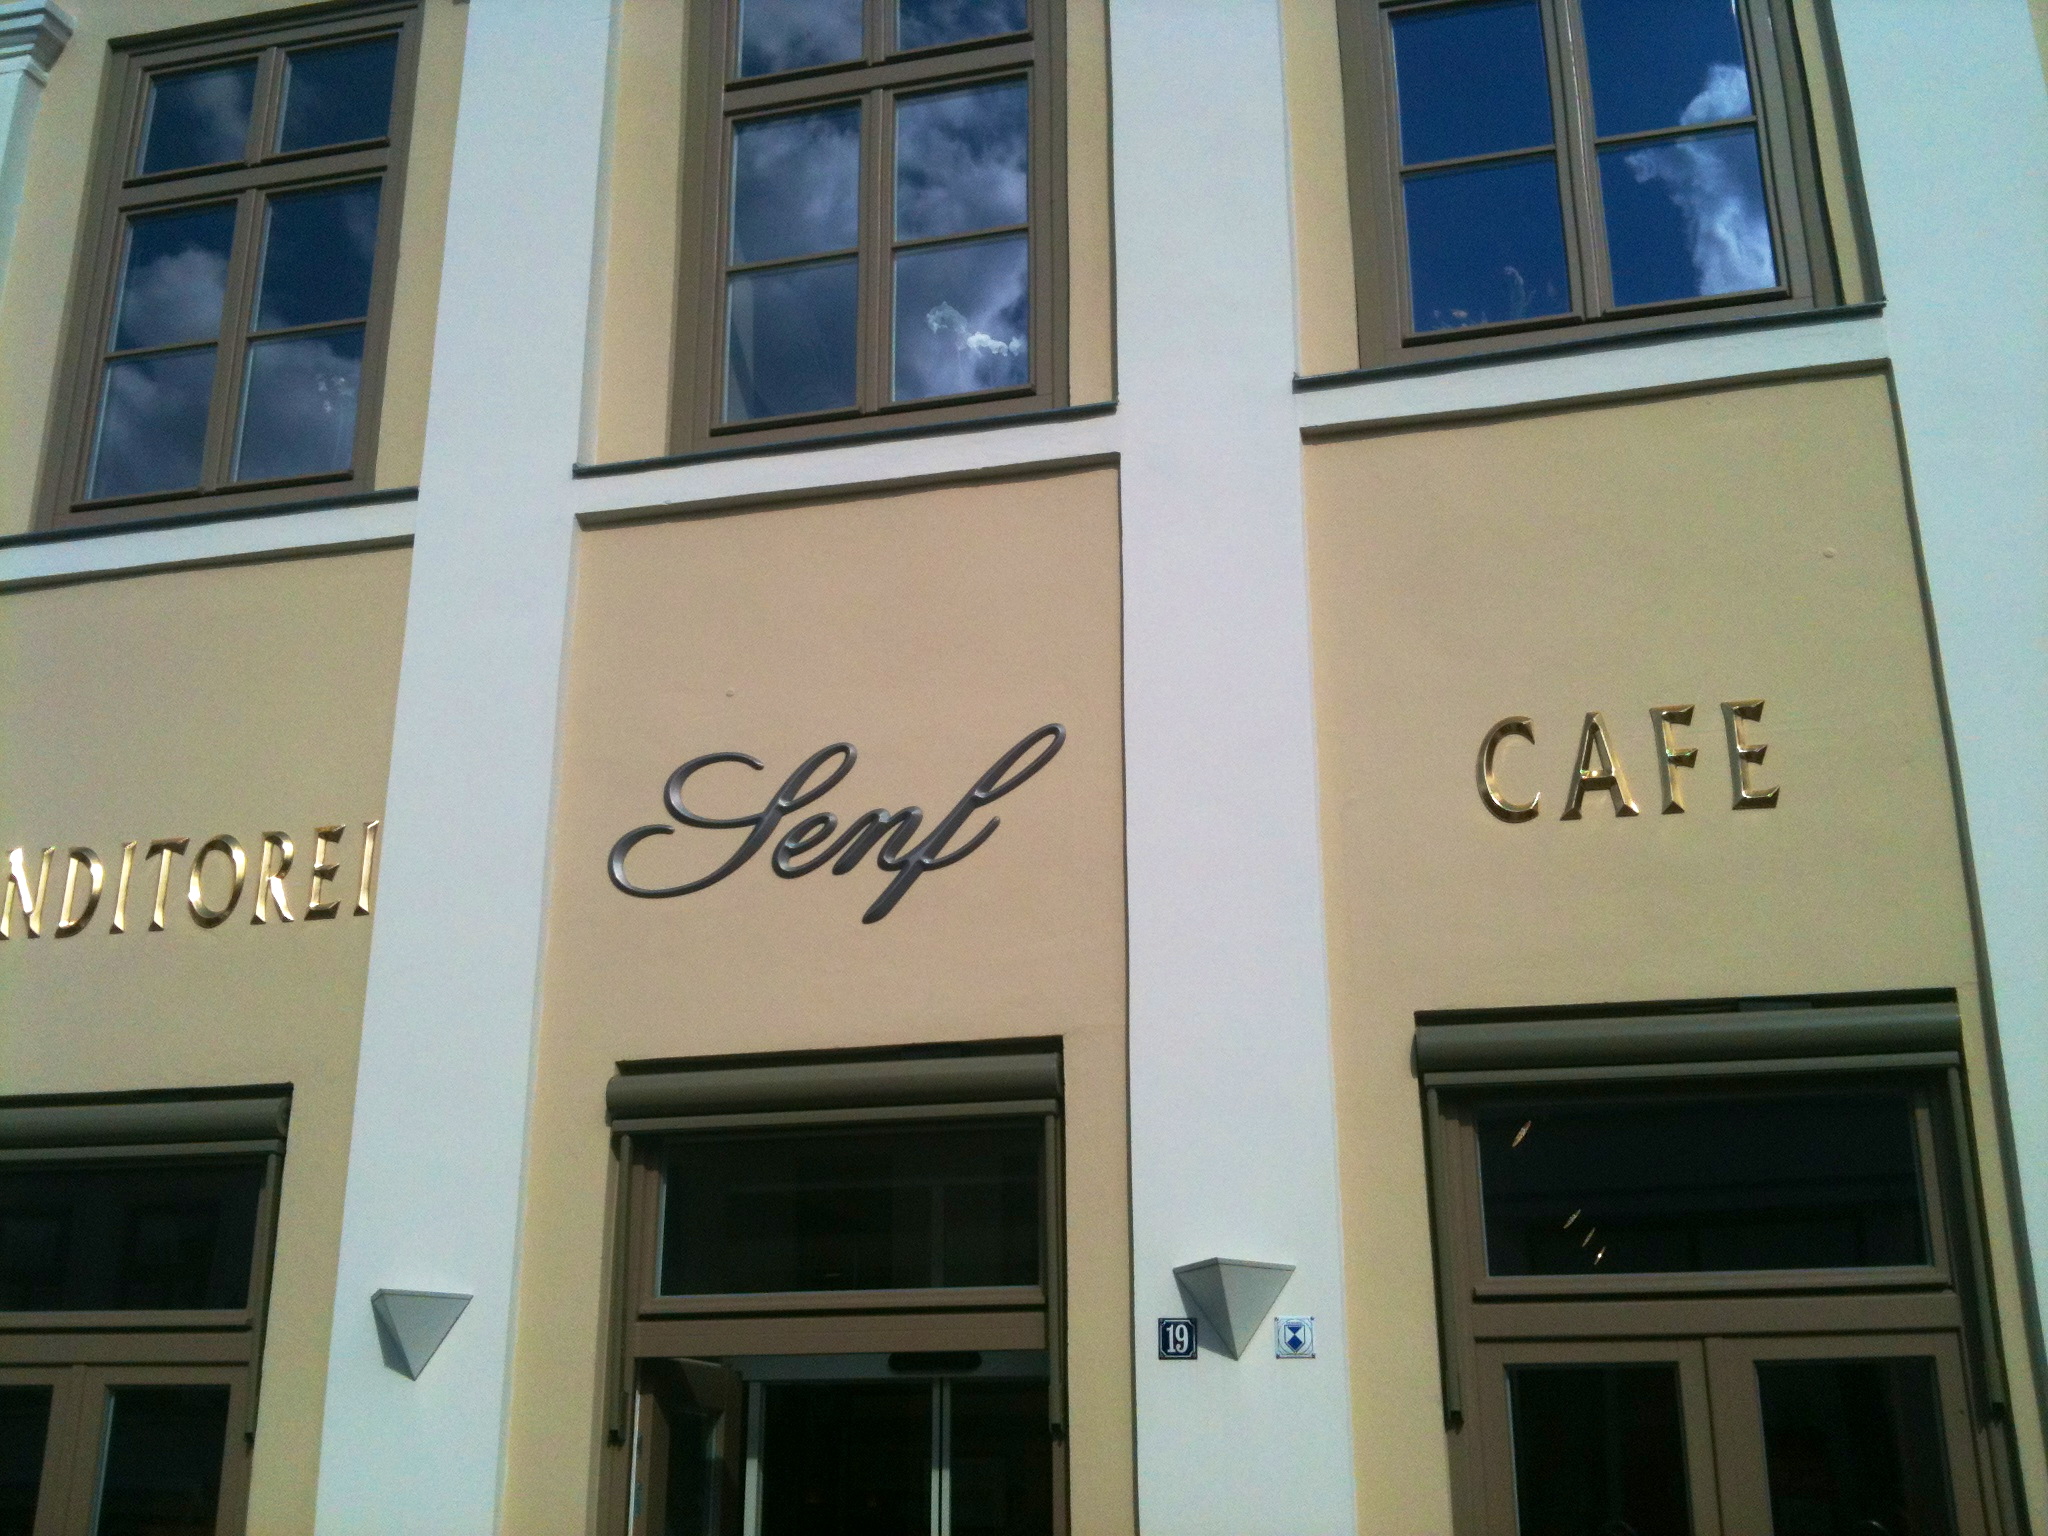 Cafe Senf in 23966 Wismar-Altstadt